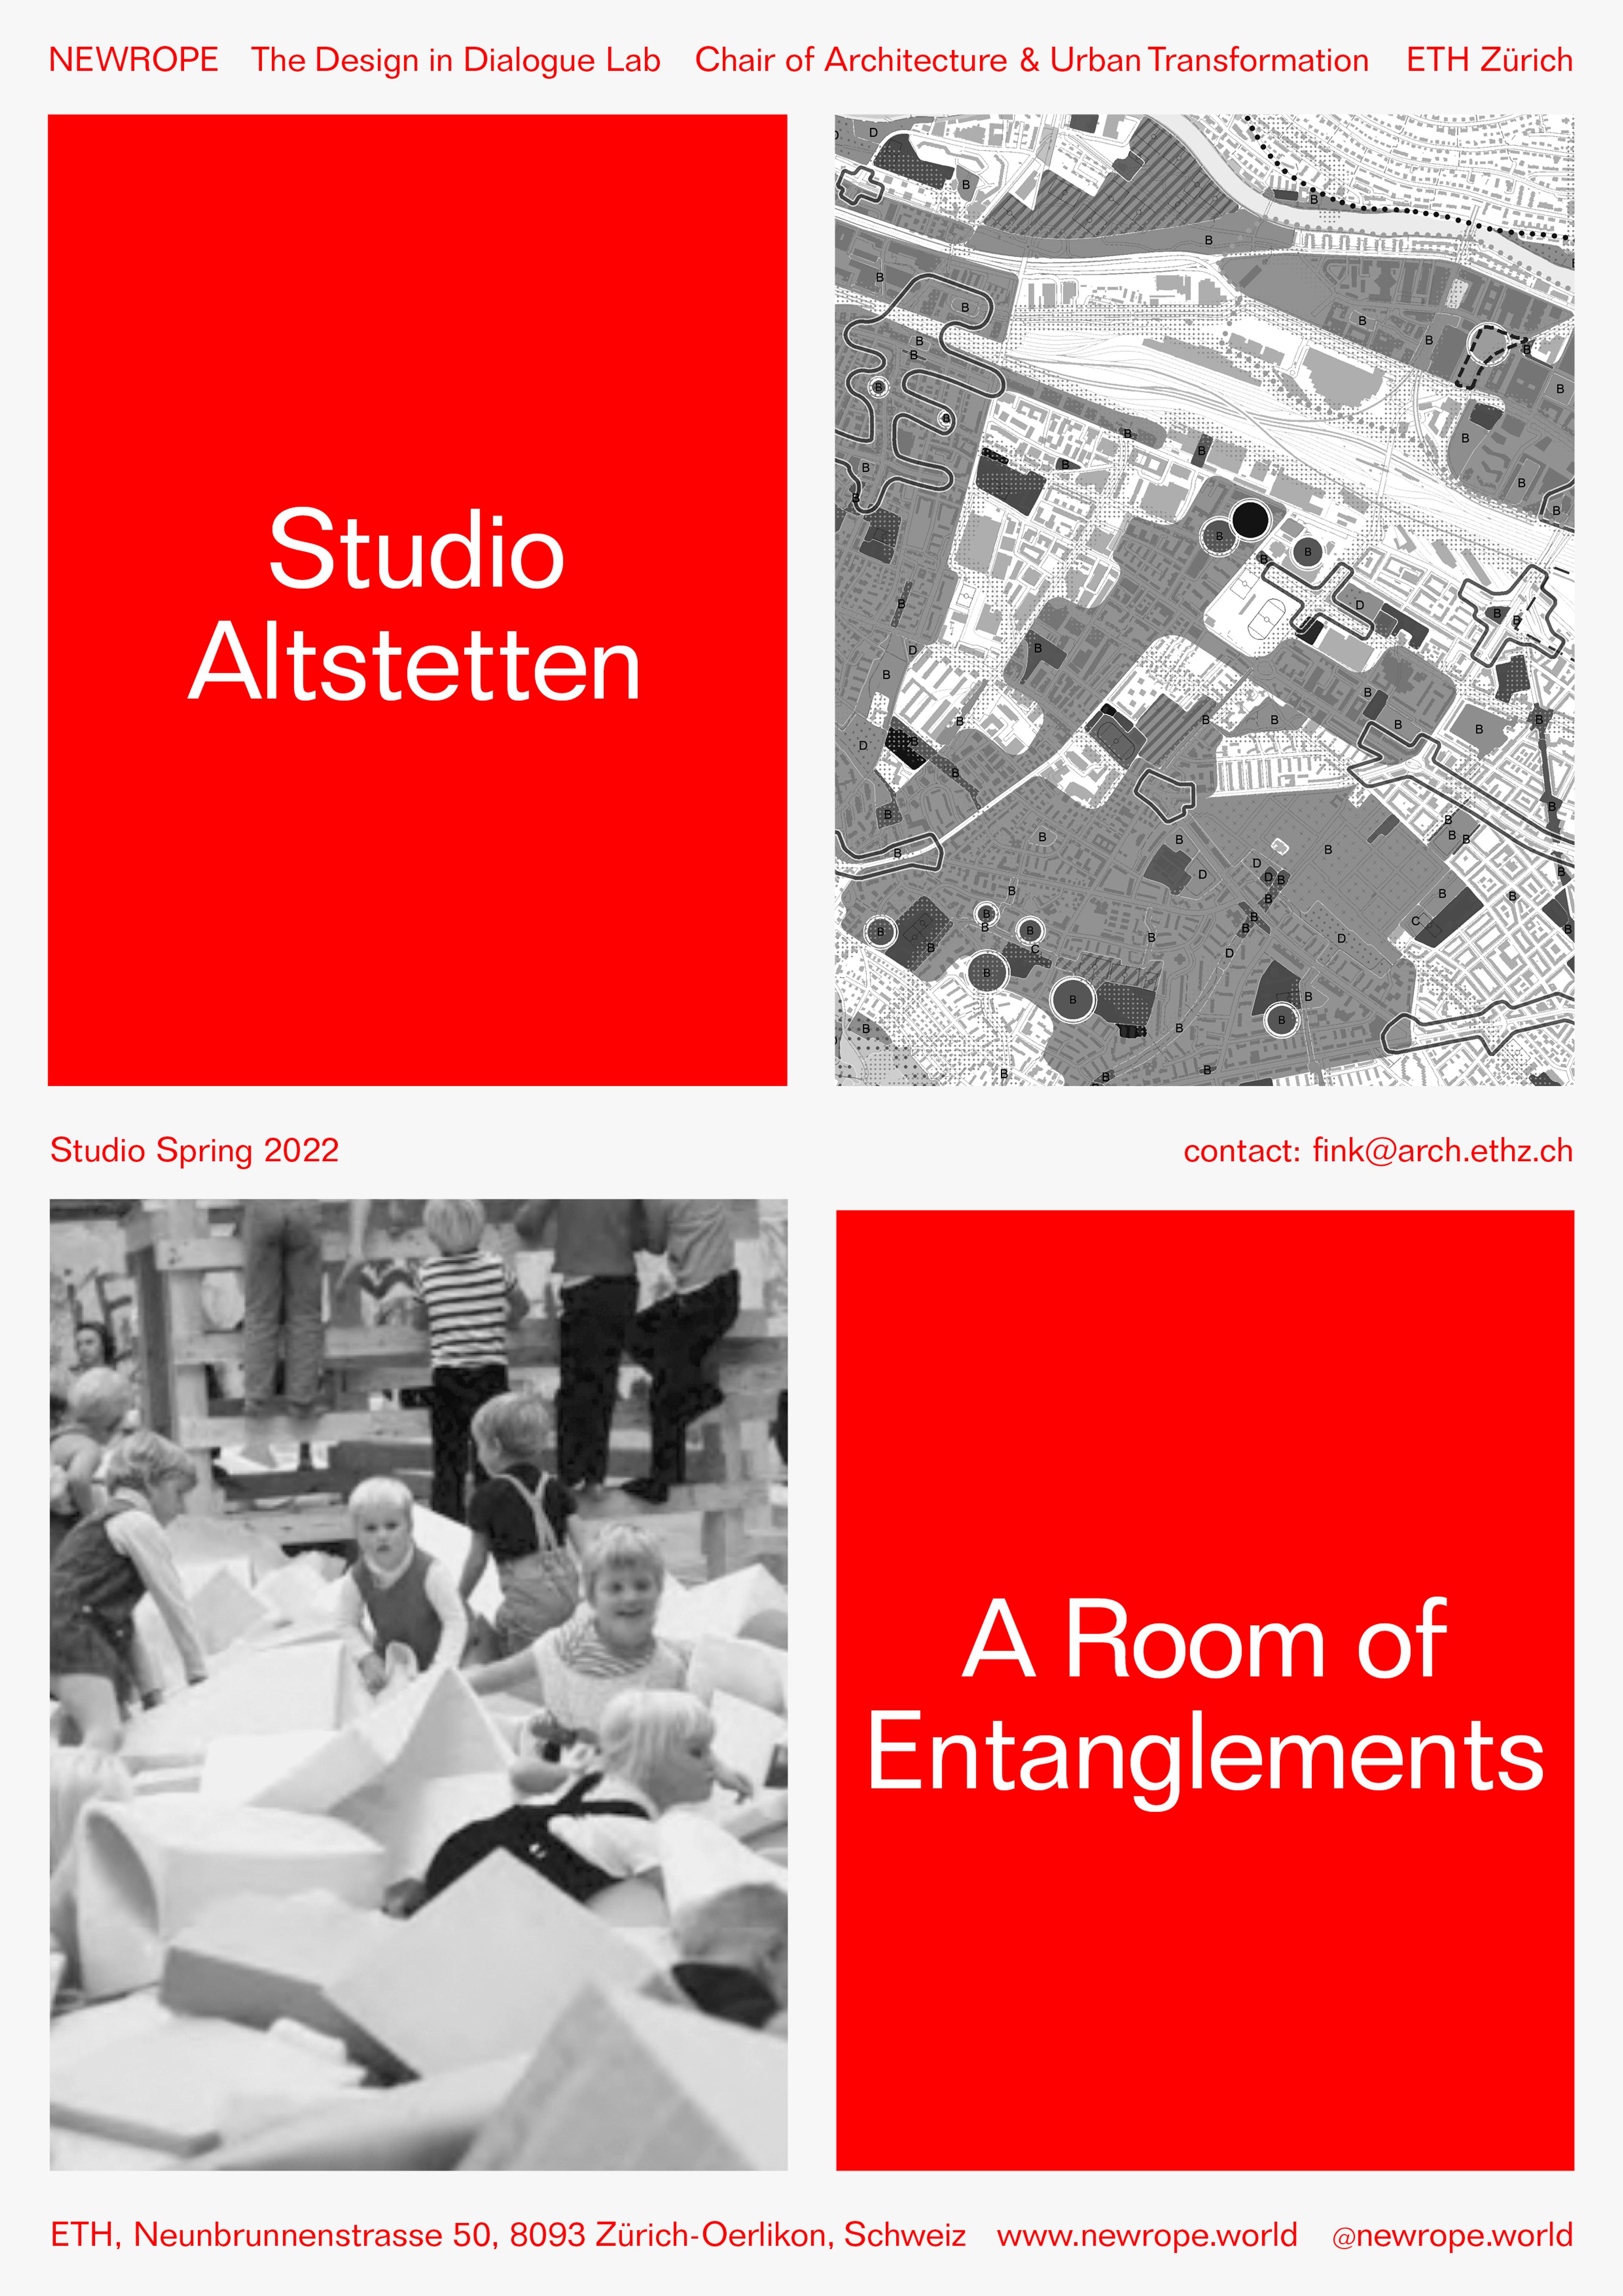 Announcement: Studio Altstetten – A Room of Entanglements